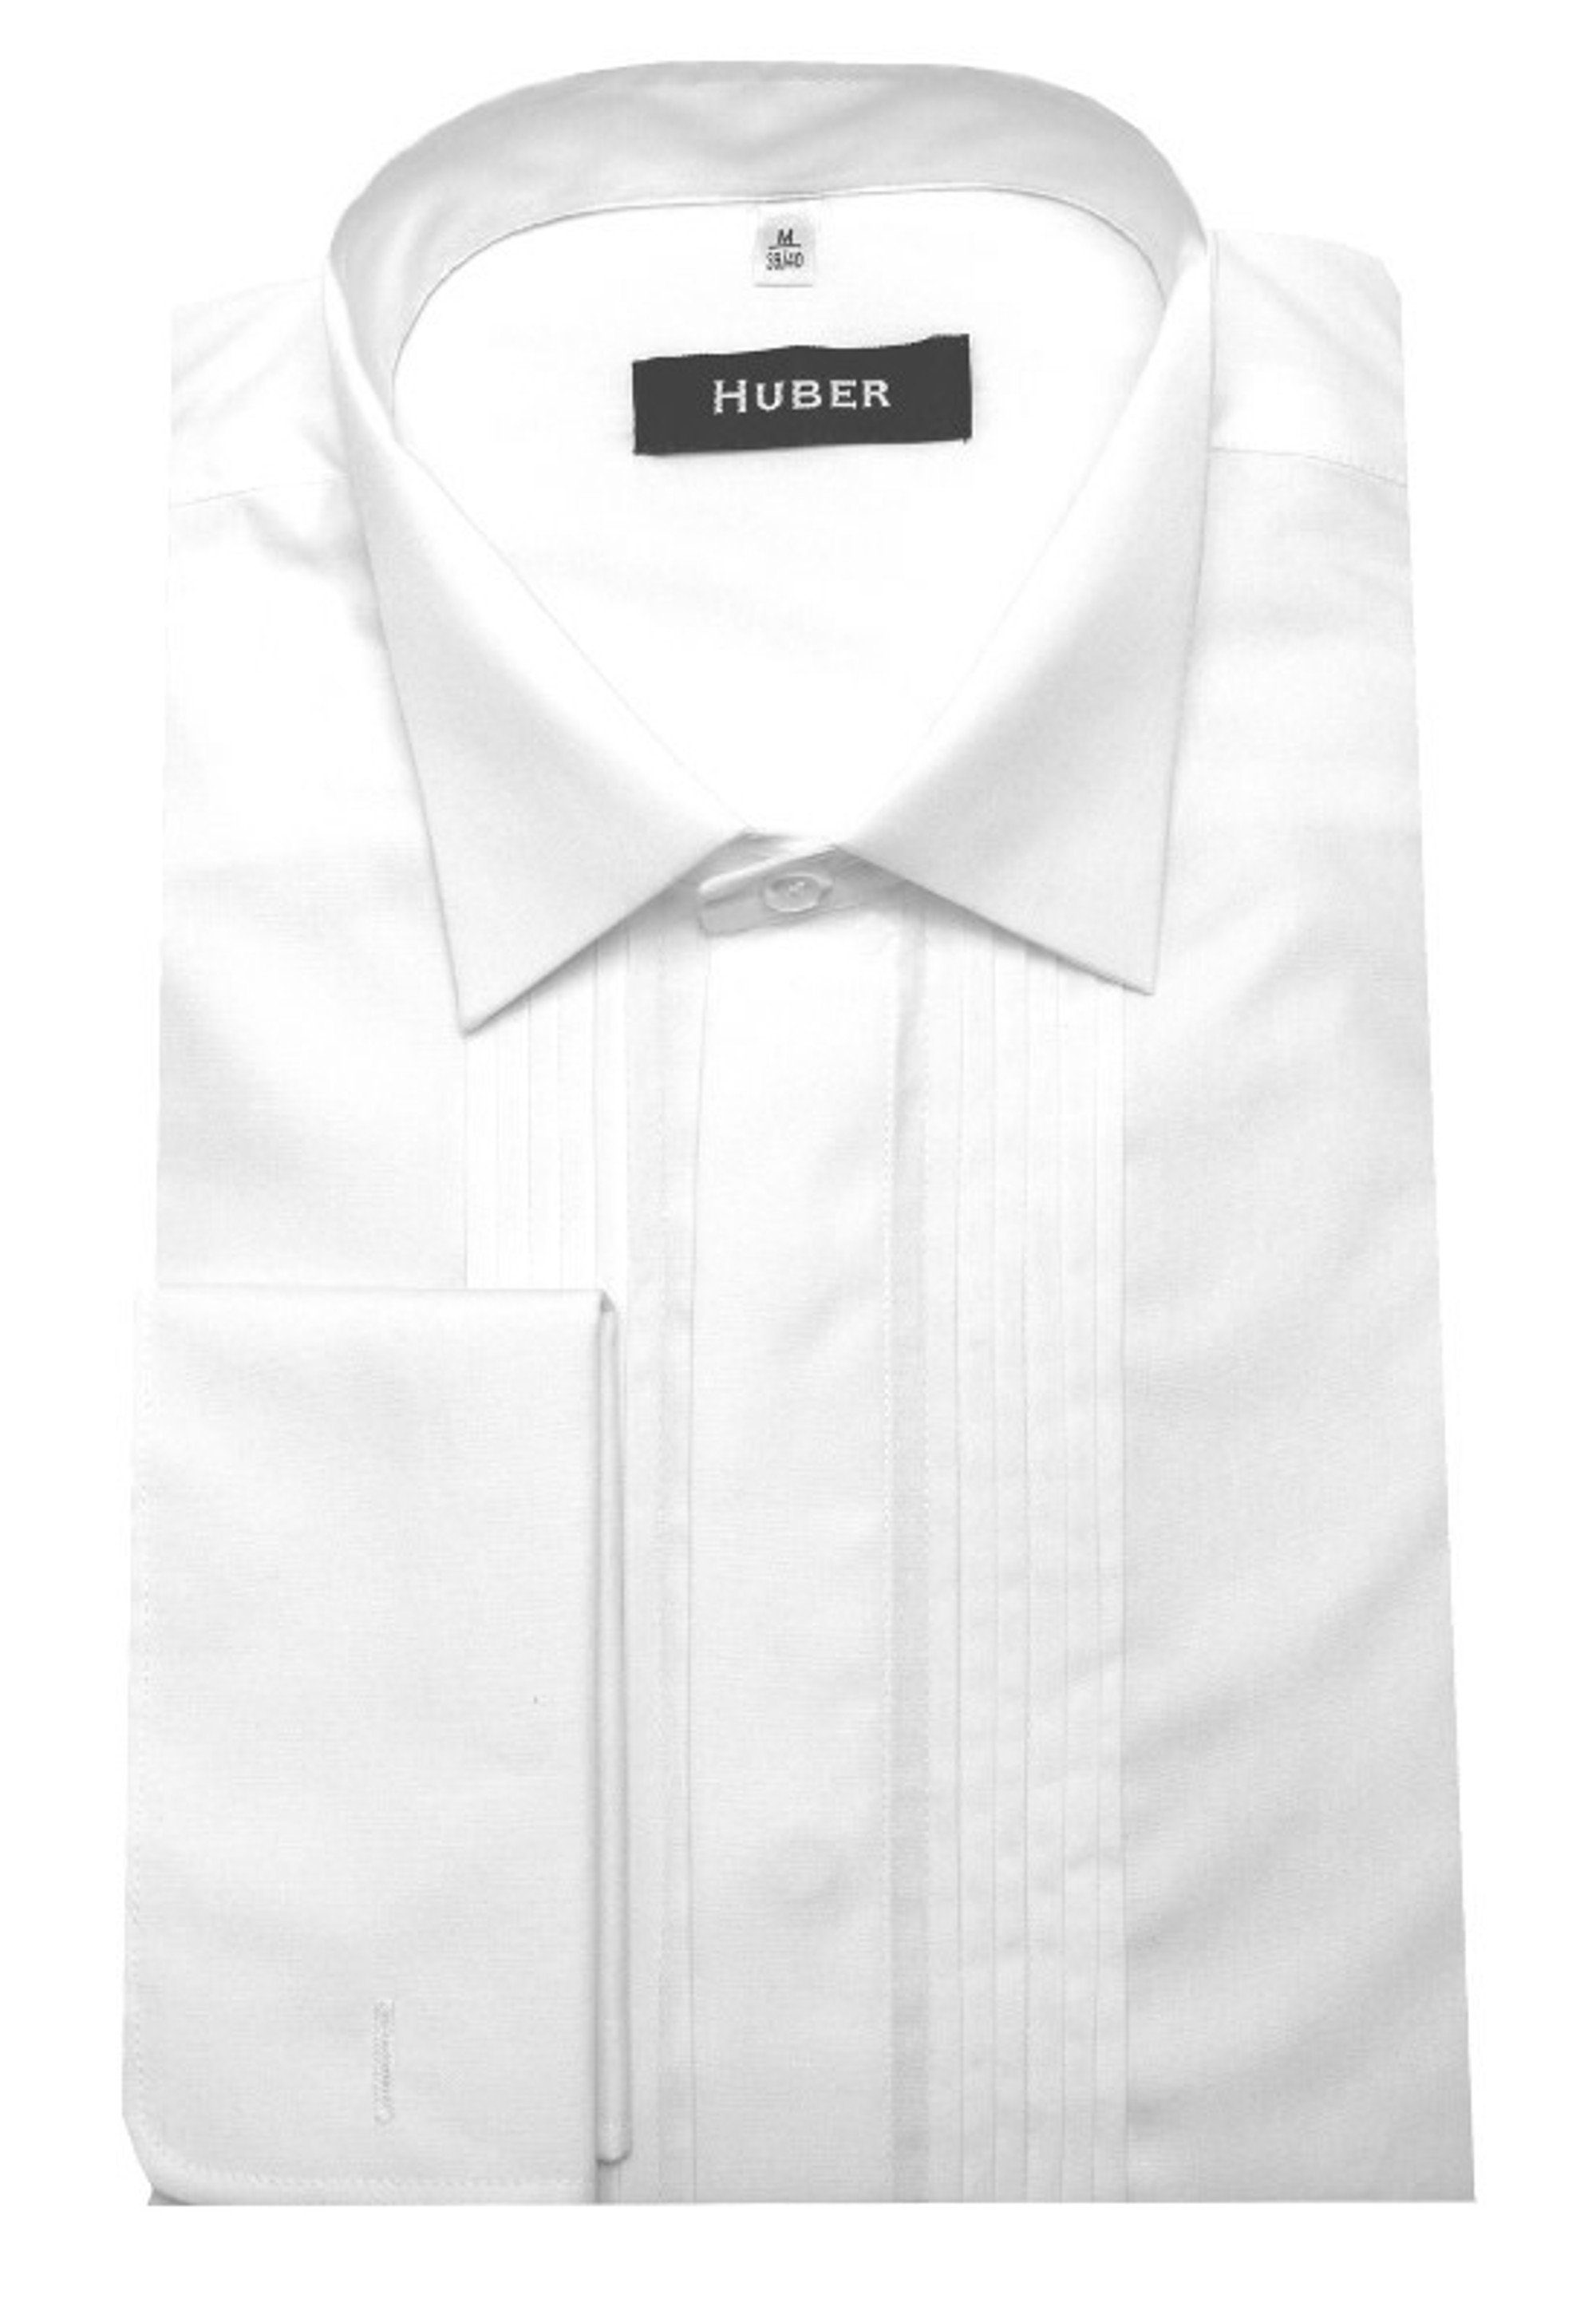 Huber Hemden Smokinghemd HU-0171 Kläppchen-Kragen, Plissee, Umschlag-Manschette, Regular Fit weiß